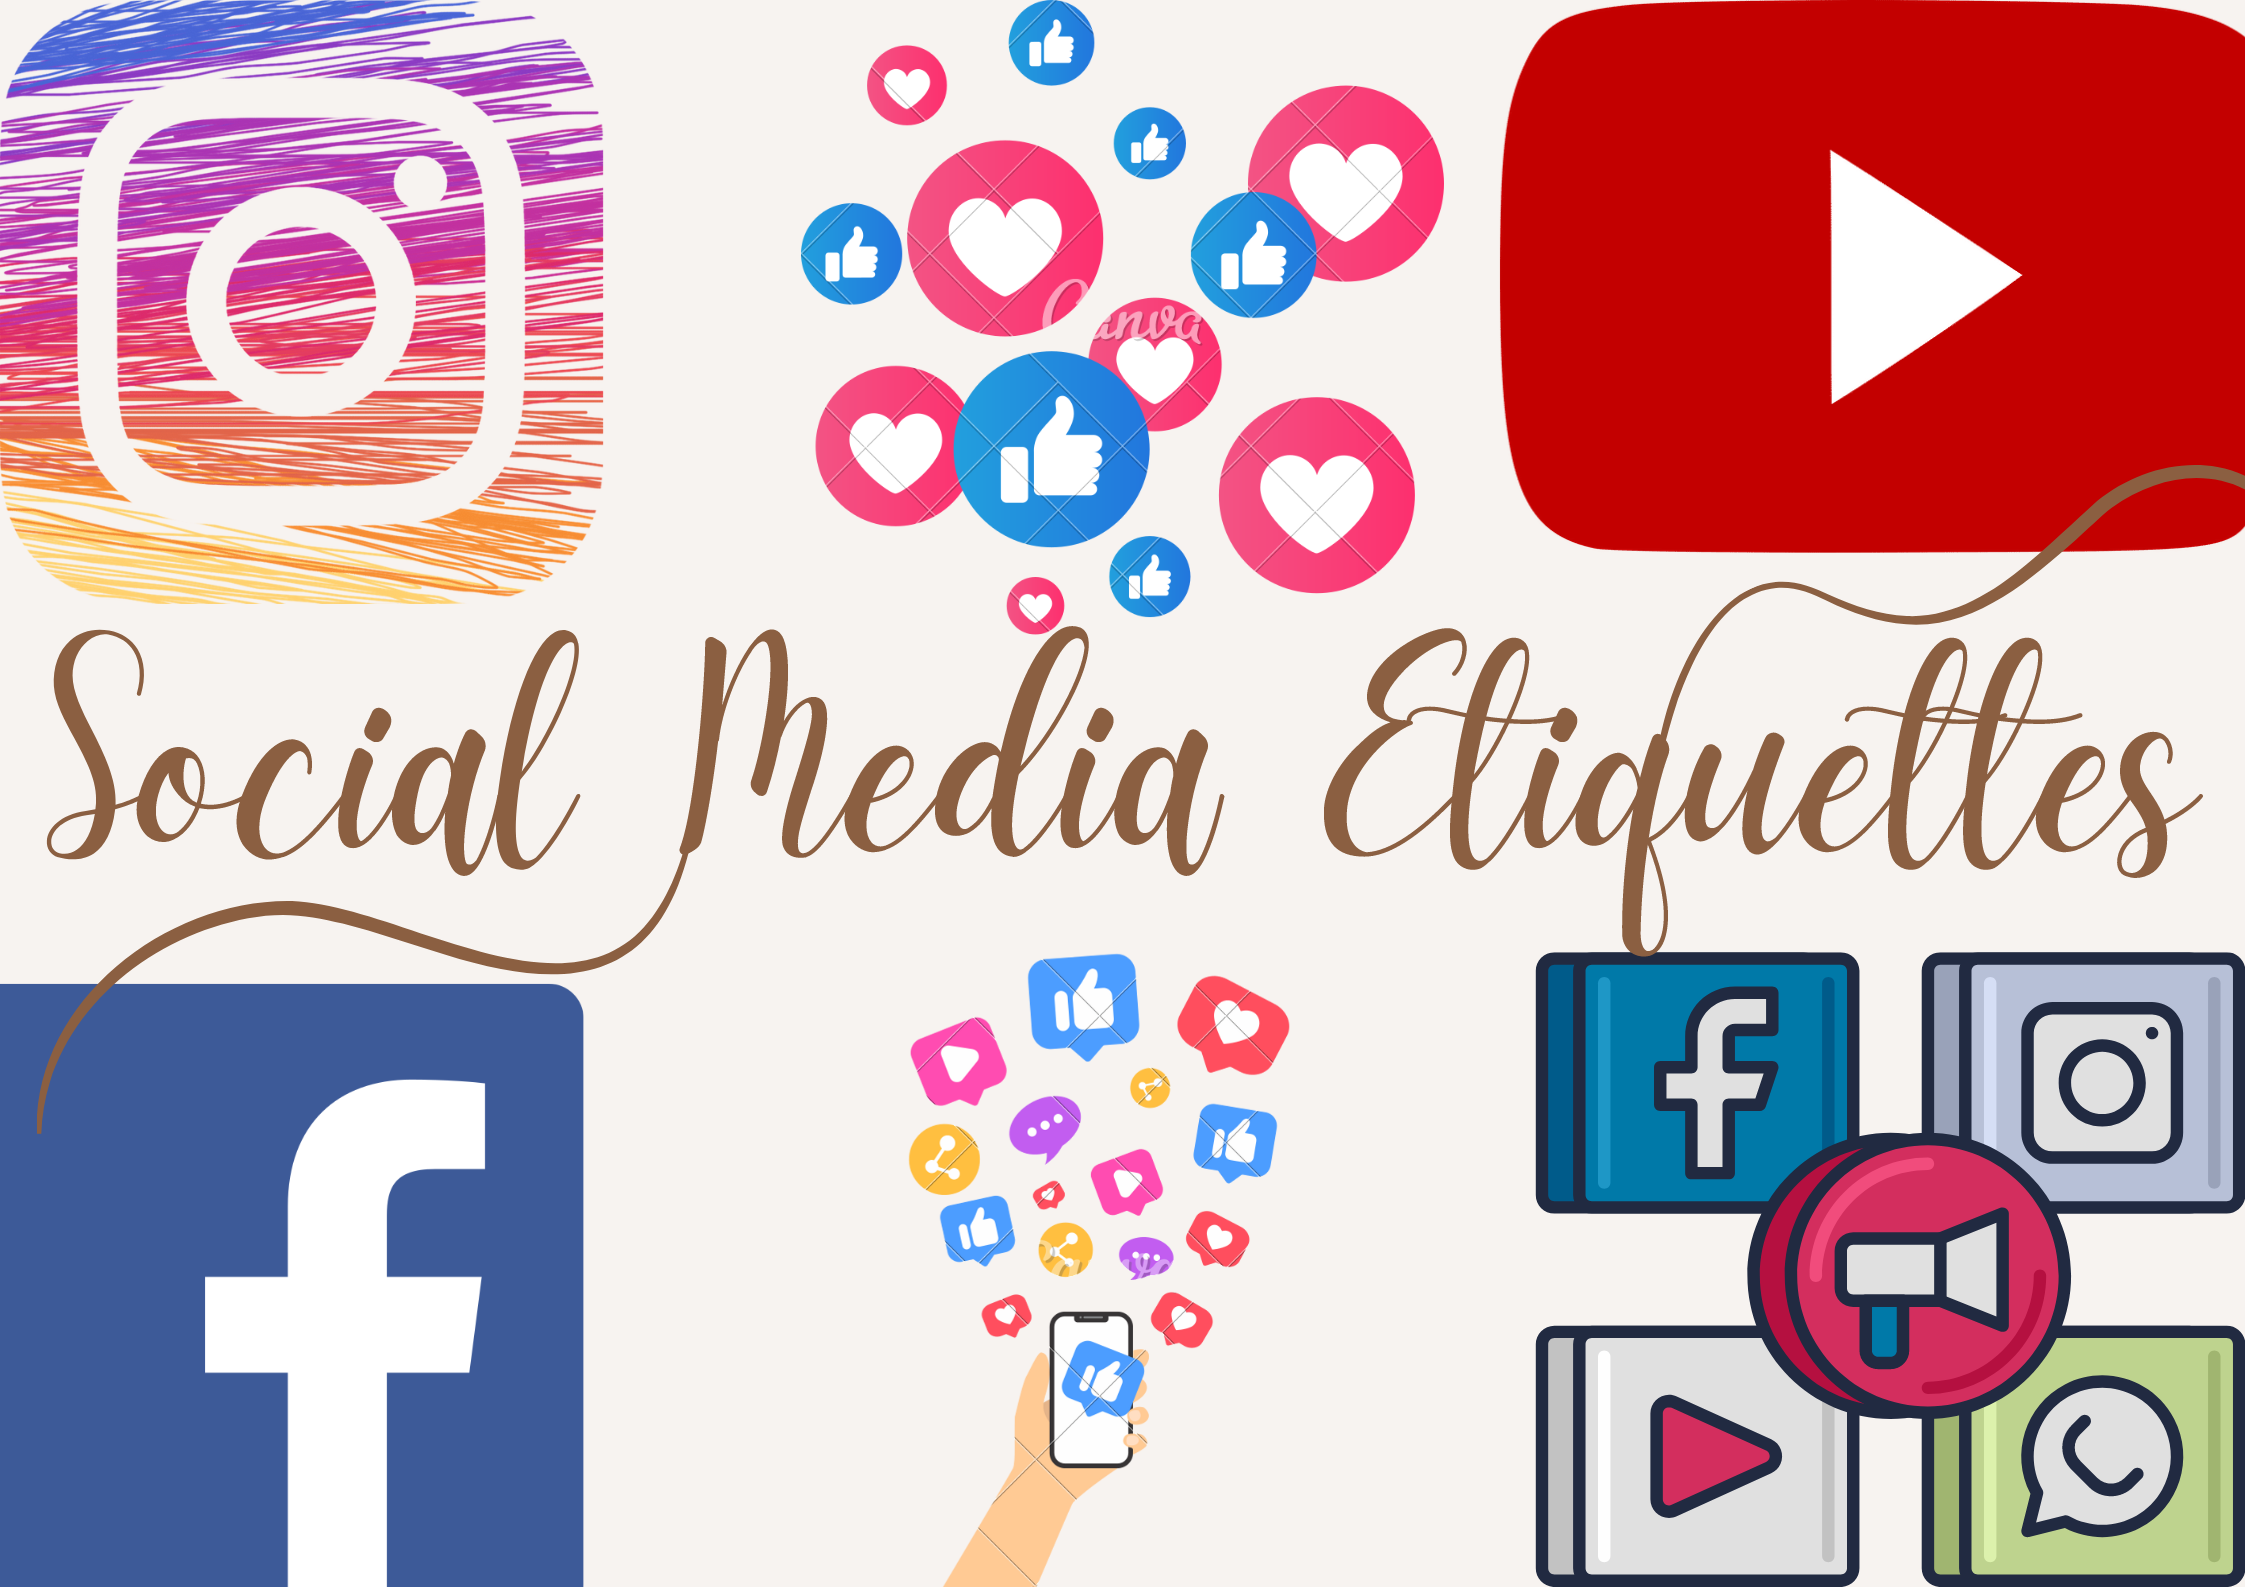 Social Media Etiquettes.png